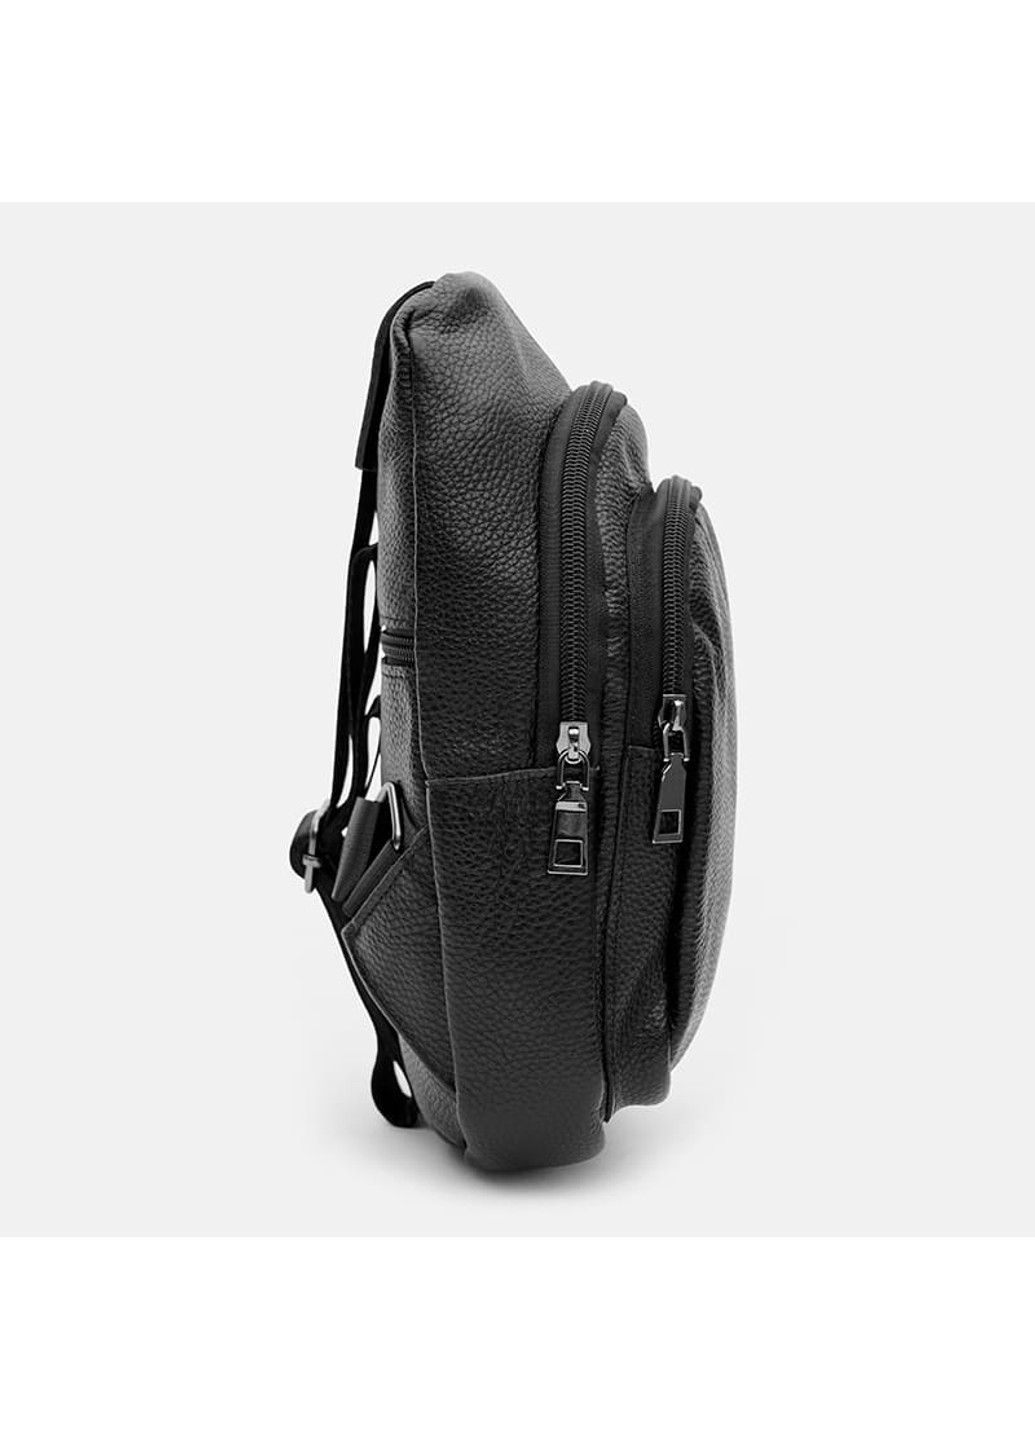 Мужской кожаный рюкзак K1087bl-black Keizer (266143538)